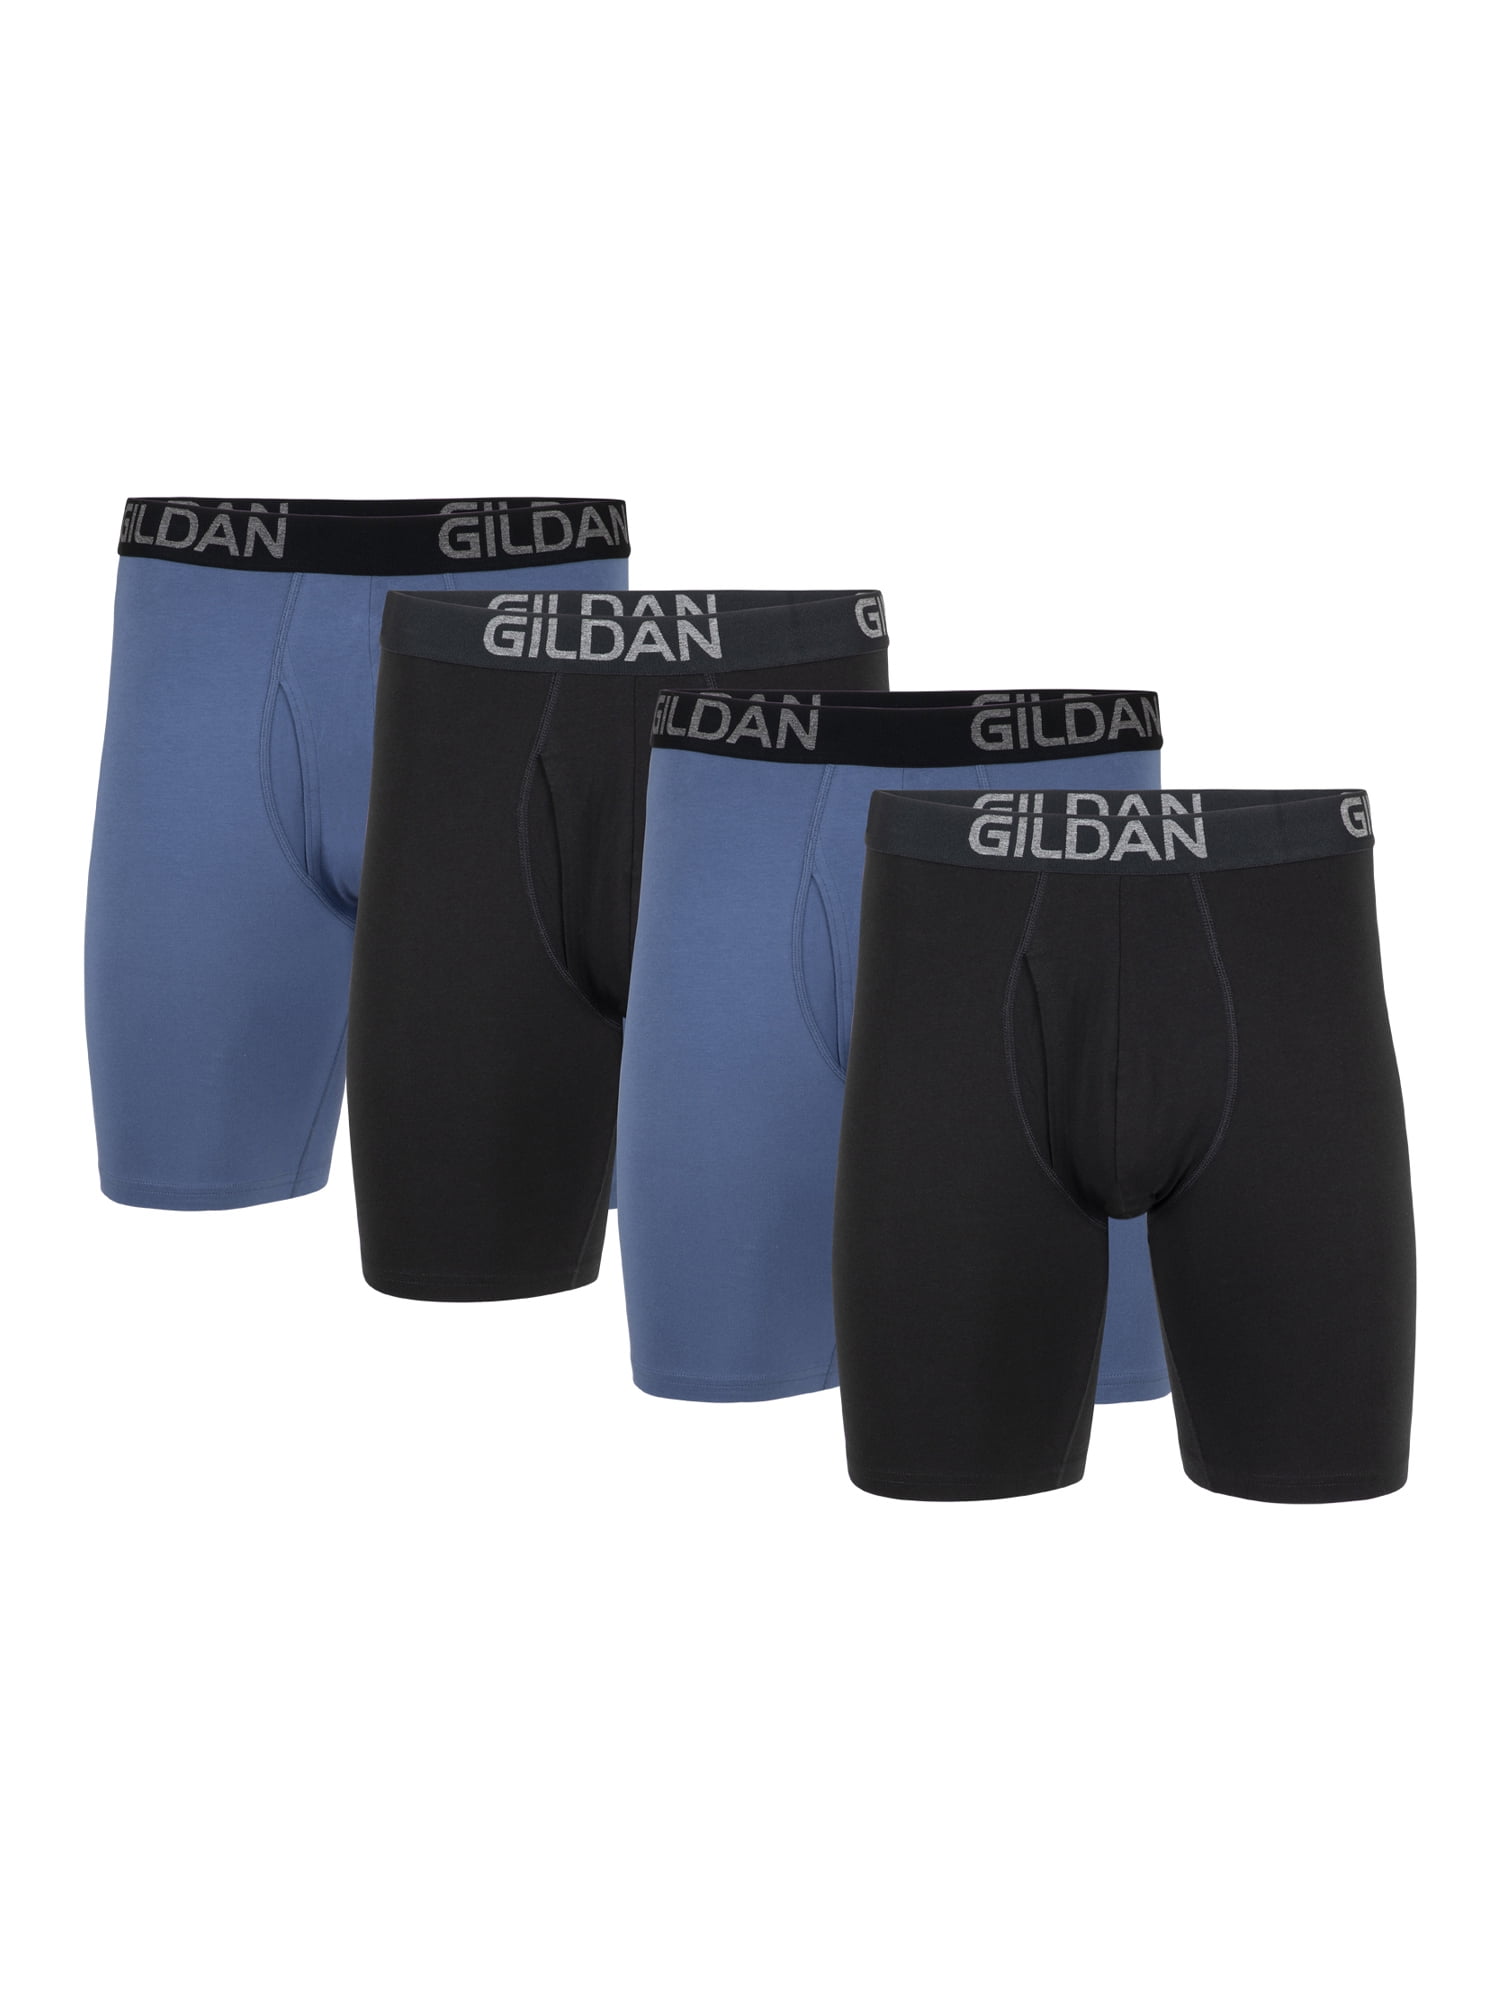 Gildan Men's Cotton Stretch Long Leg Boxer Briefs, 4-Pack, 8.5